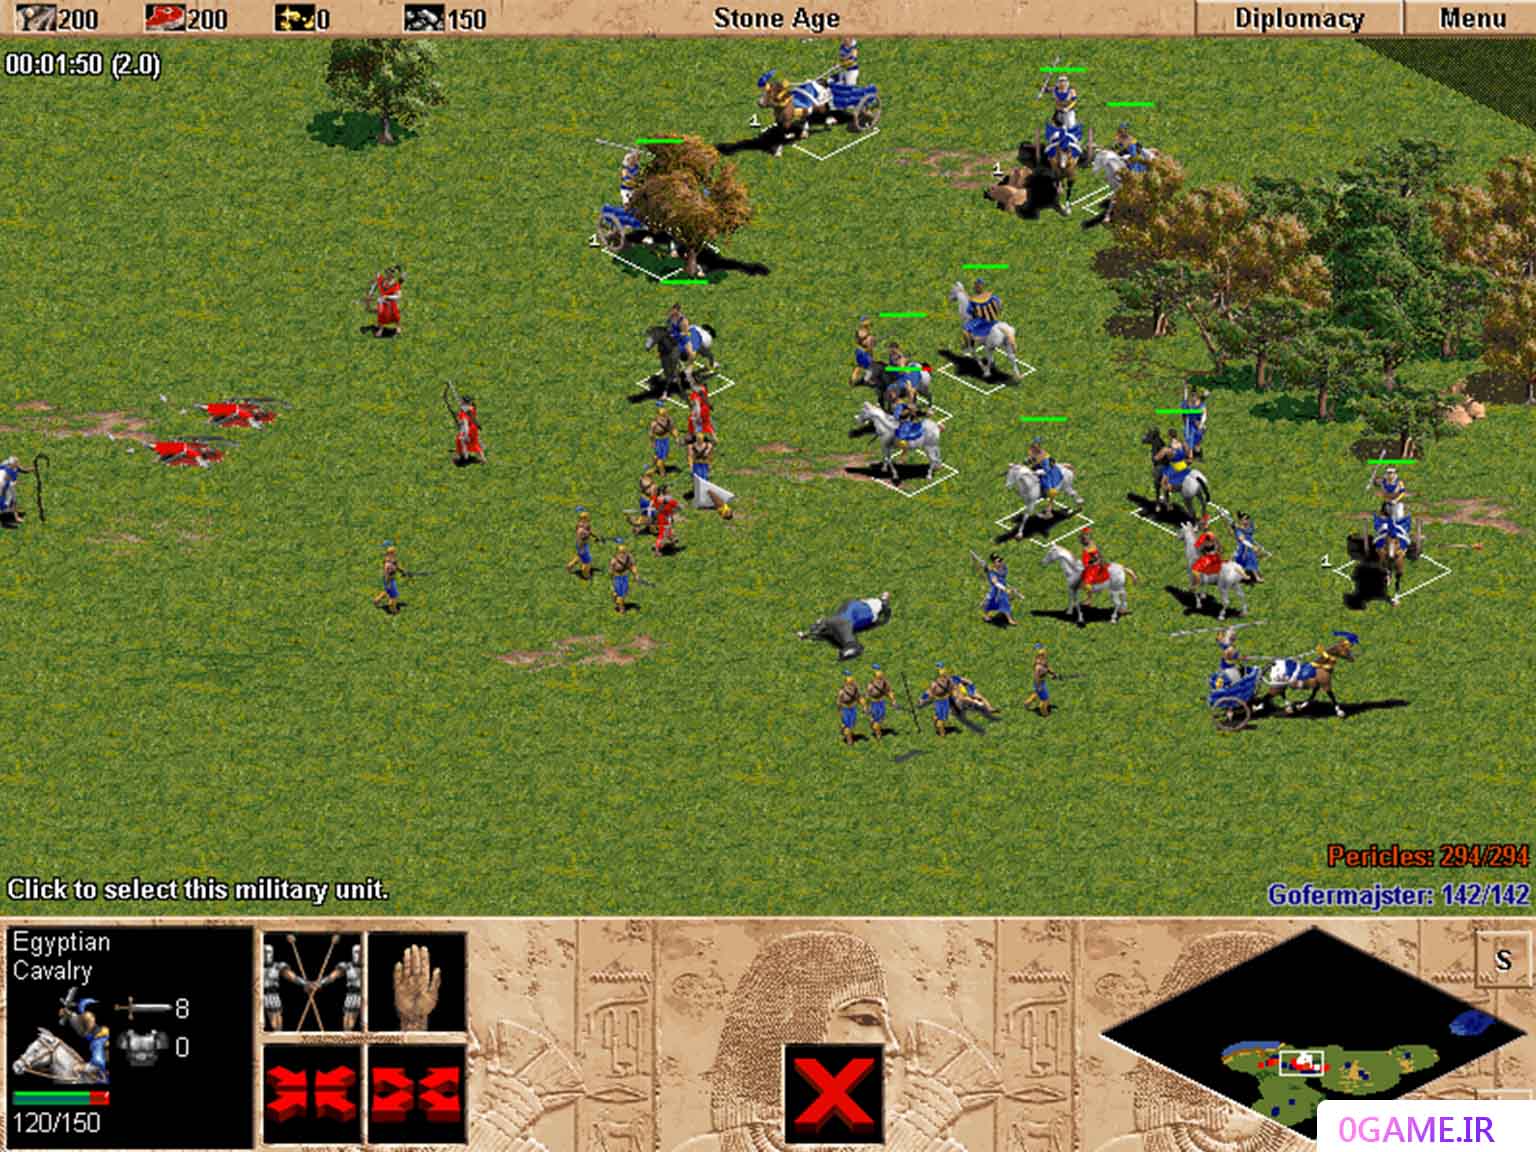 دانلود بازی عصر امپراطوری 1 (Age of Empires) نسخه کامل برای کامپیوتر